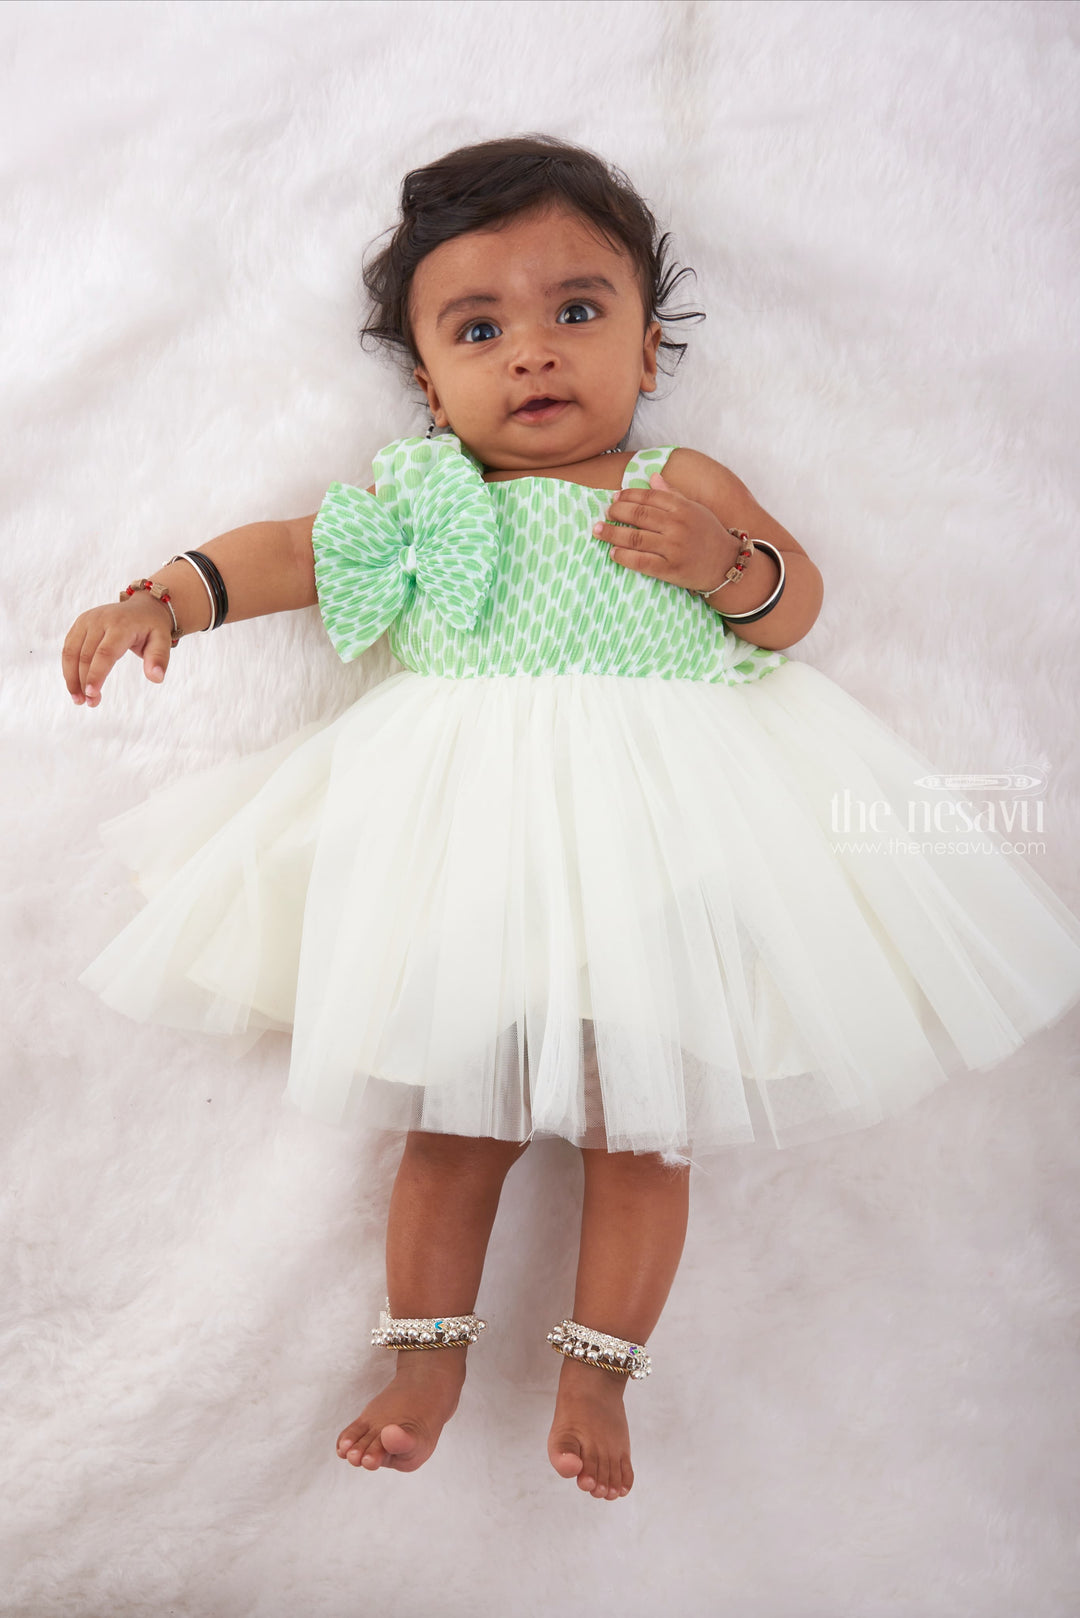 The Nesavu Baby Tutu Frock Minty Polka Delight Baby Tutu Dress - A Whimsical Spin on Classic Elegance Nesavu 14 (6M) / Green / Plain Net BFJ478A-14 Tiny Tidbits of Fashion | Lovely Baby Girl Frocks | The Nesavu